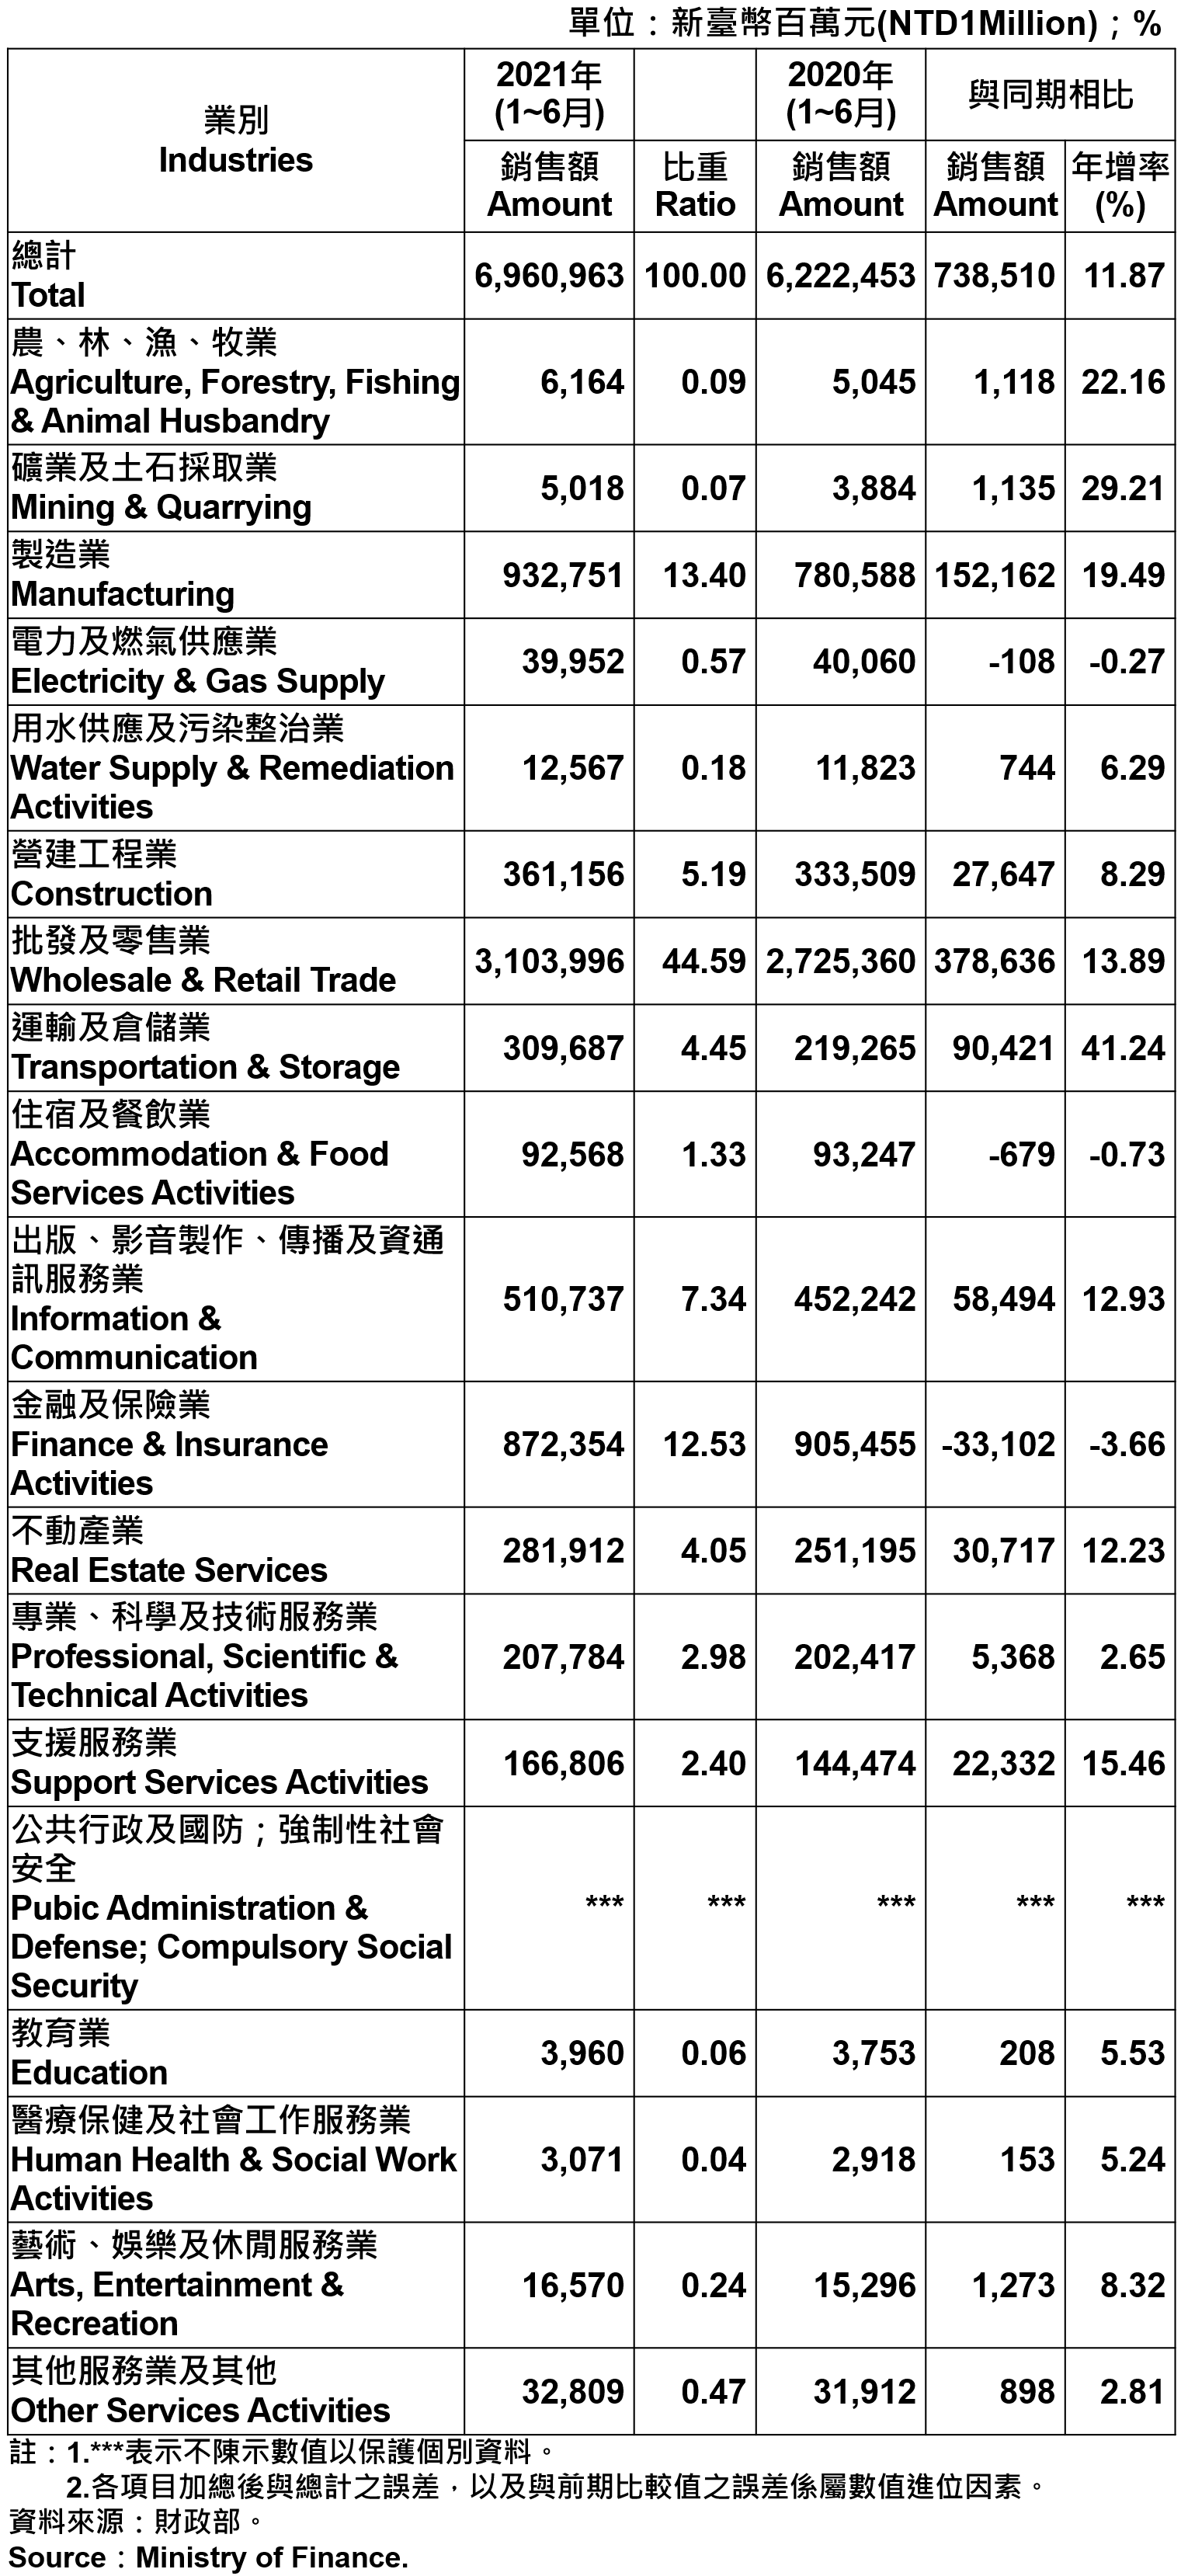 臺北市各產業公司行號銷售額—2021Q2 Operating Income for Business Enterprises in Taipei City—2021Q2